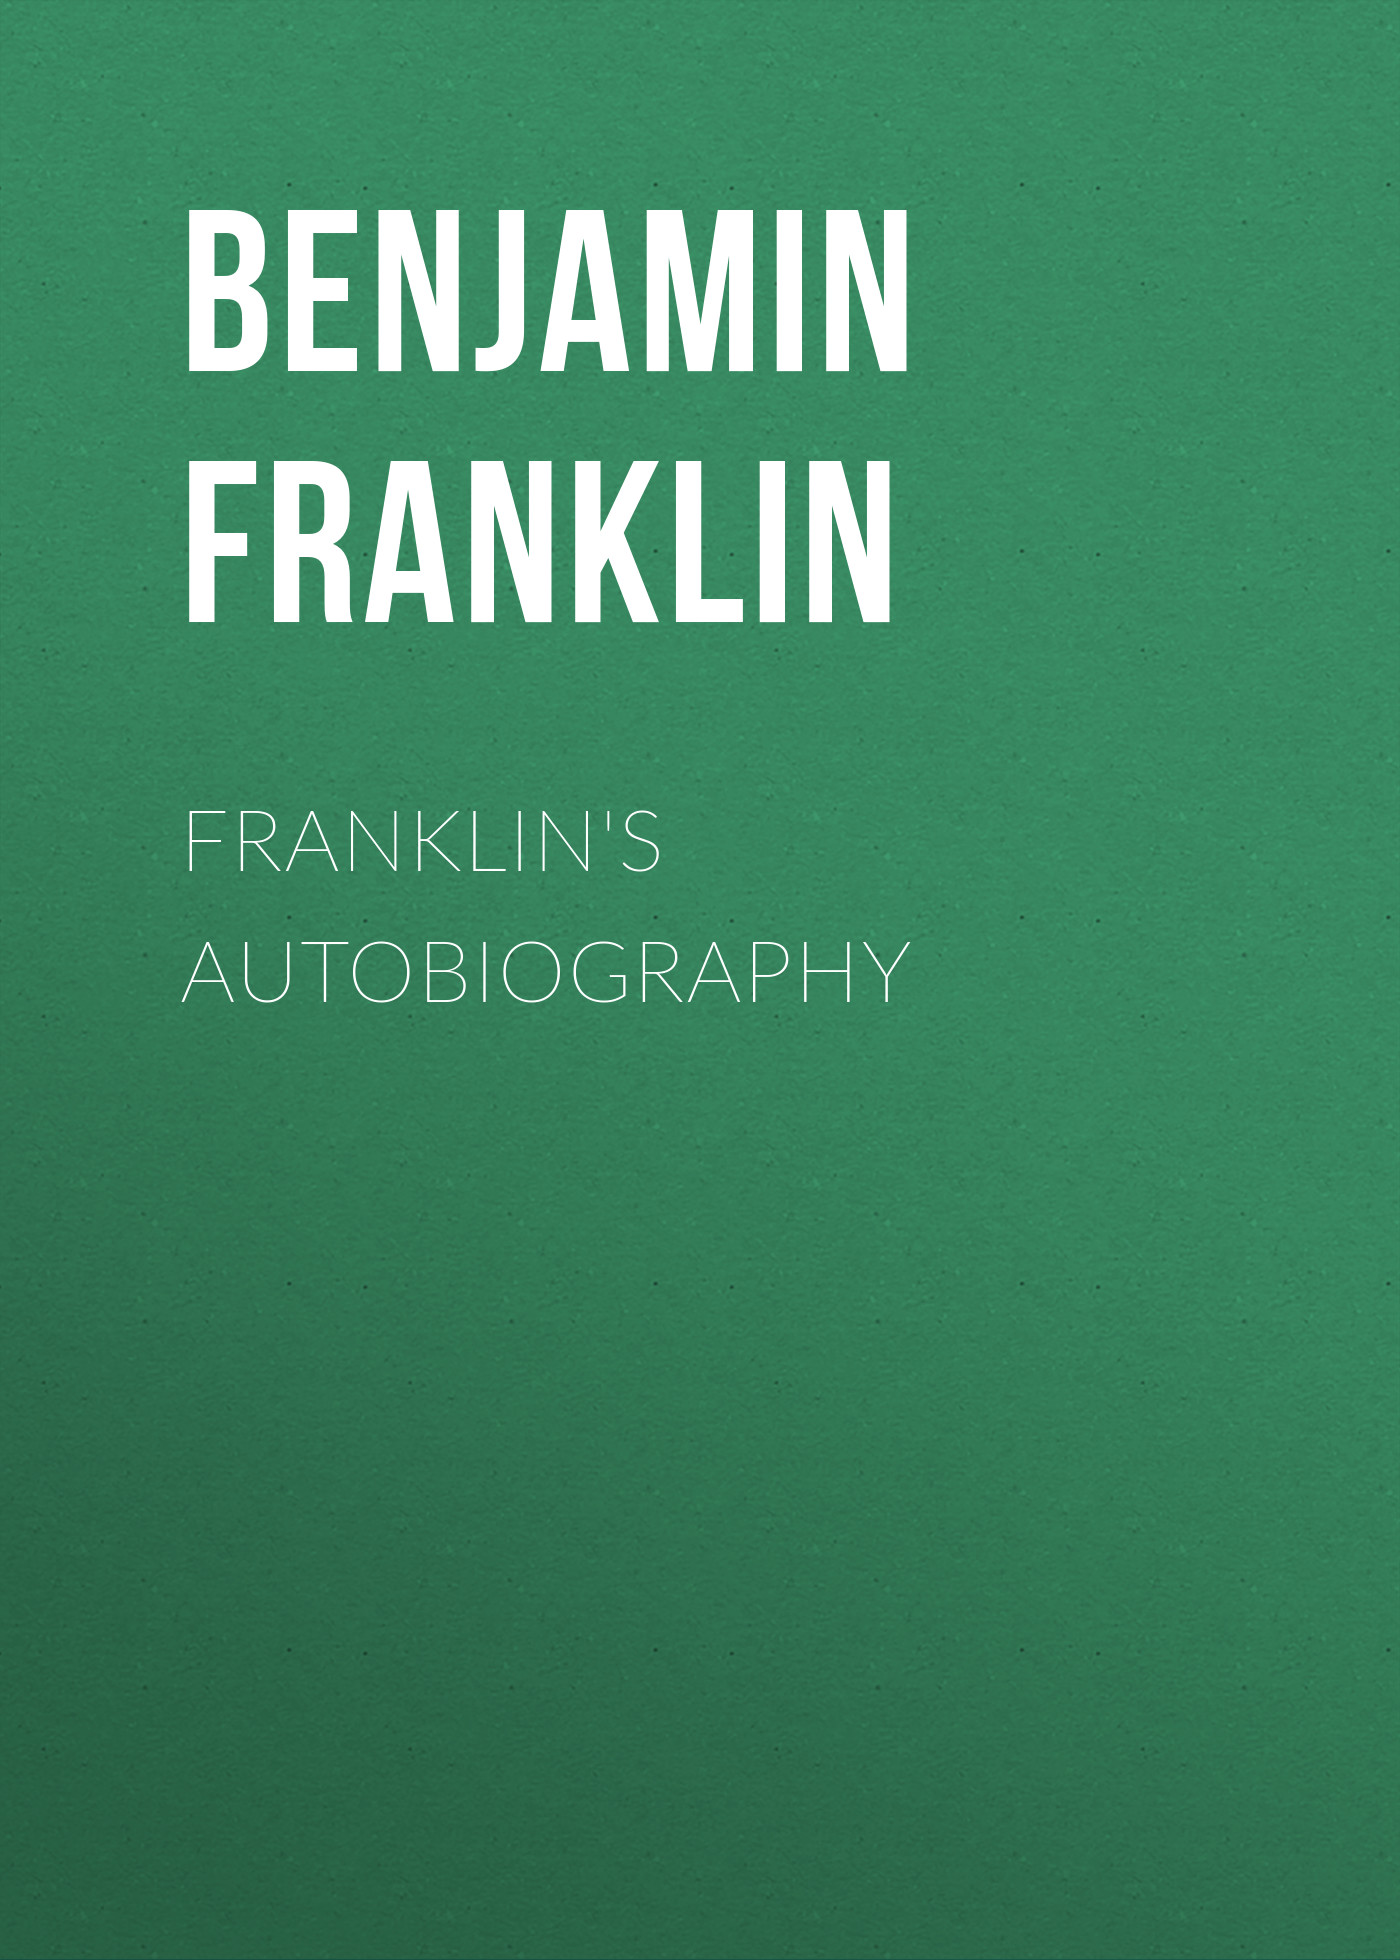 Книга Franklin's Autobiography из серии , созданная Бенджамин Франклин, может относится к жанру История, Зарубежная старинная литература, Зарубежная классика. Стоимость электронной книги Franklin's Autobiography с идентификатором 24859251 составляет 0 руб.